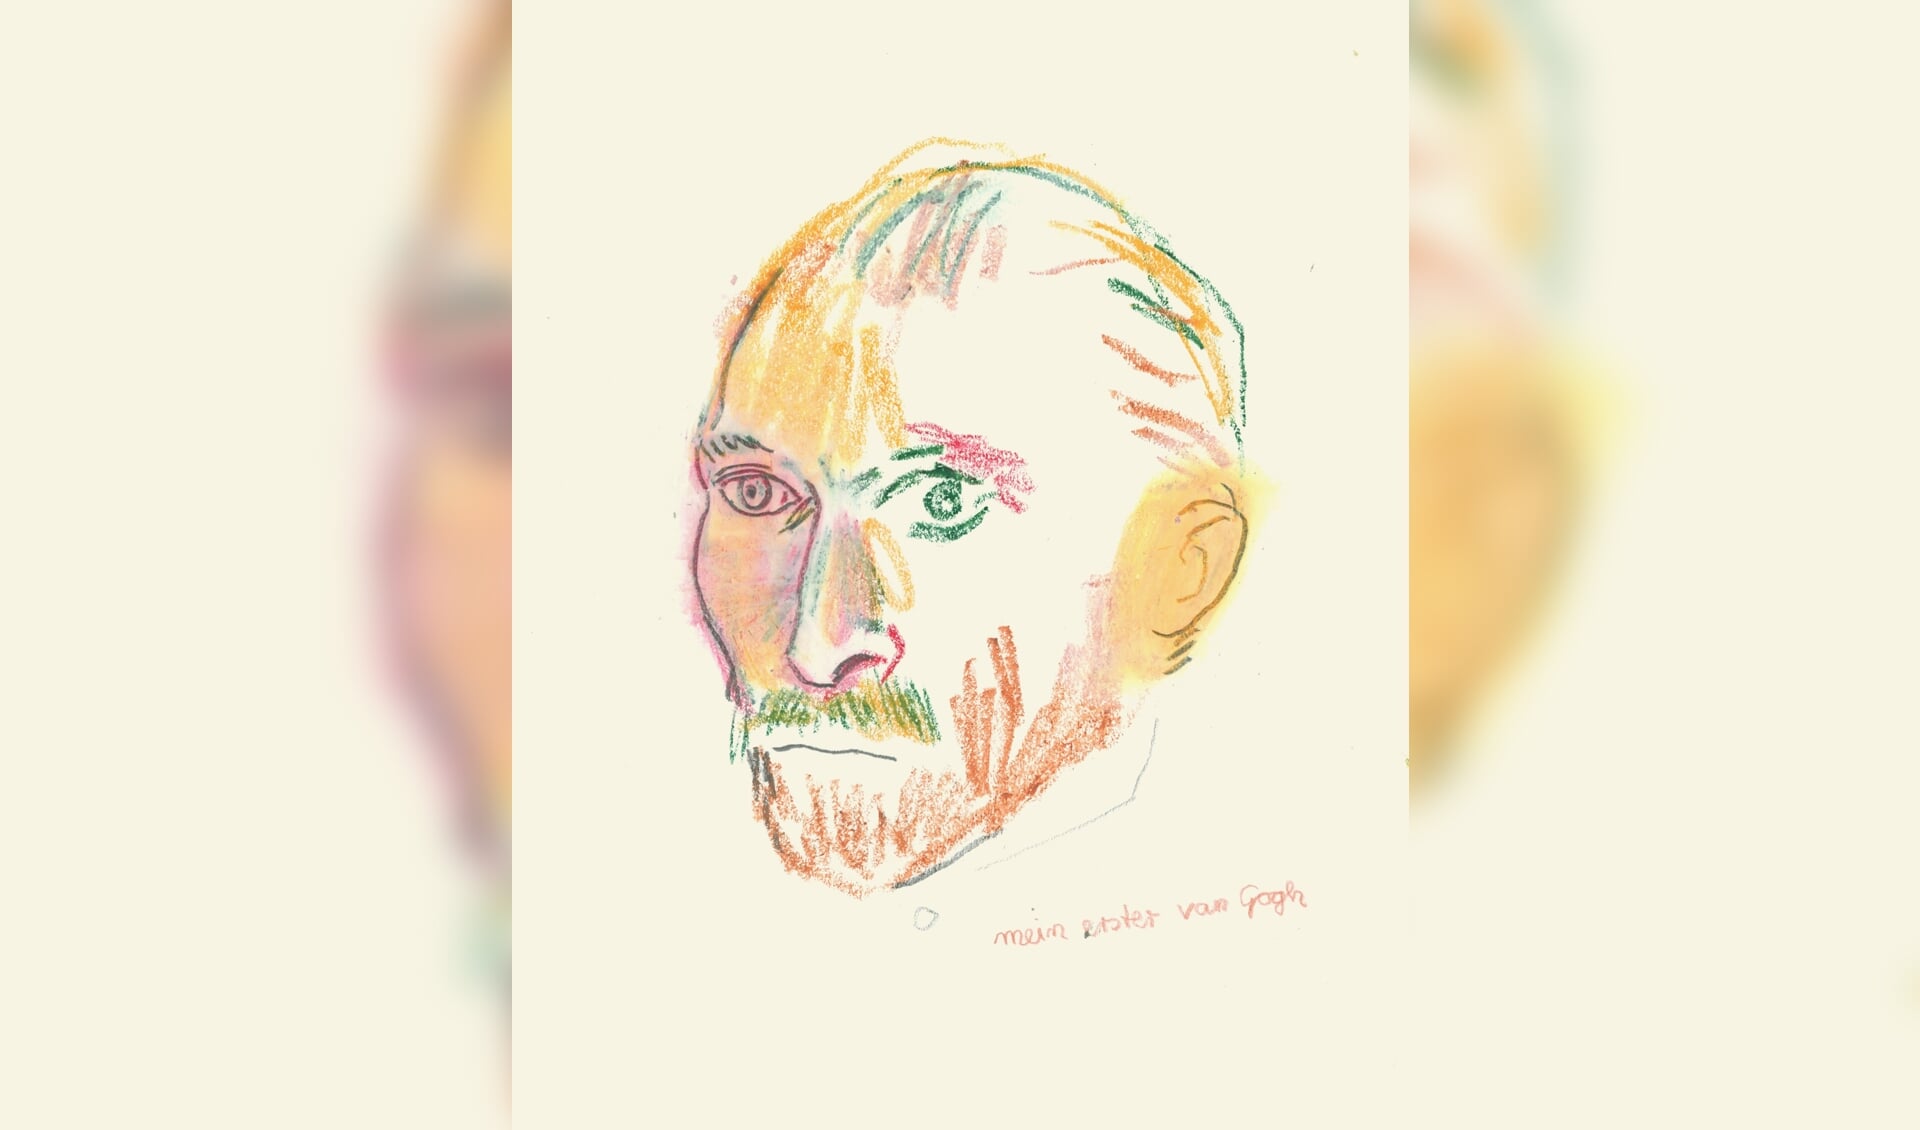 Mein erster van Gogh - 2019, gemengde techniek op papier - Jorn. B. Budesheim. Foto: PR Koppelkerk